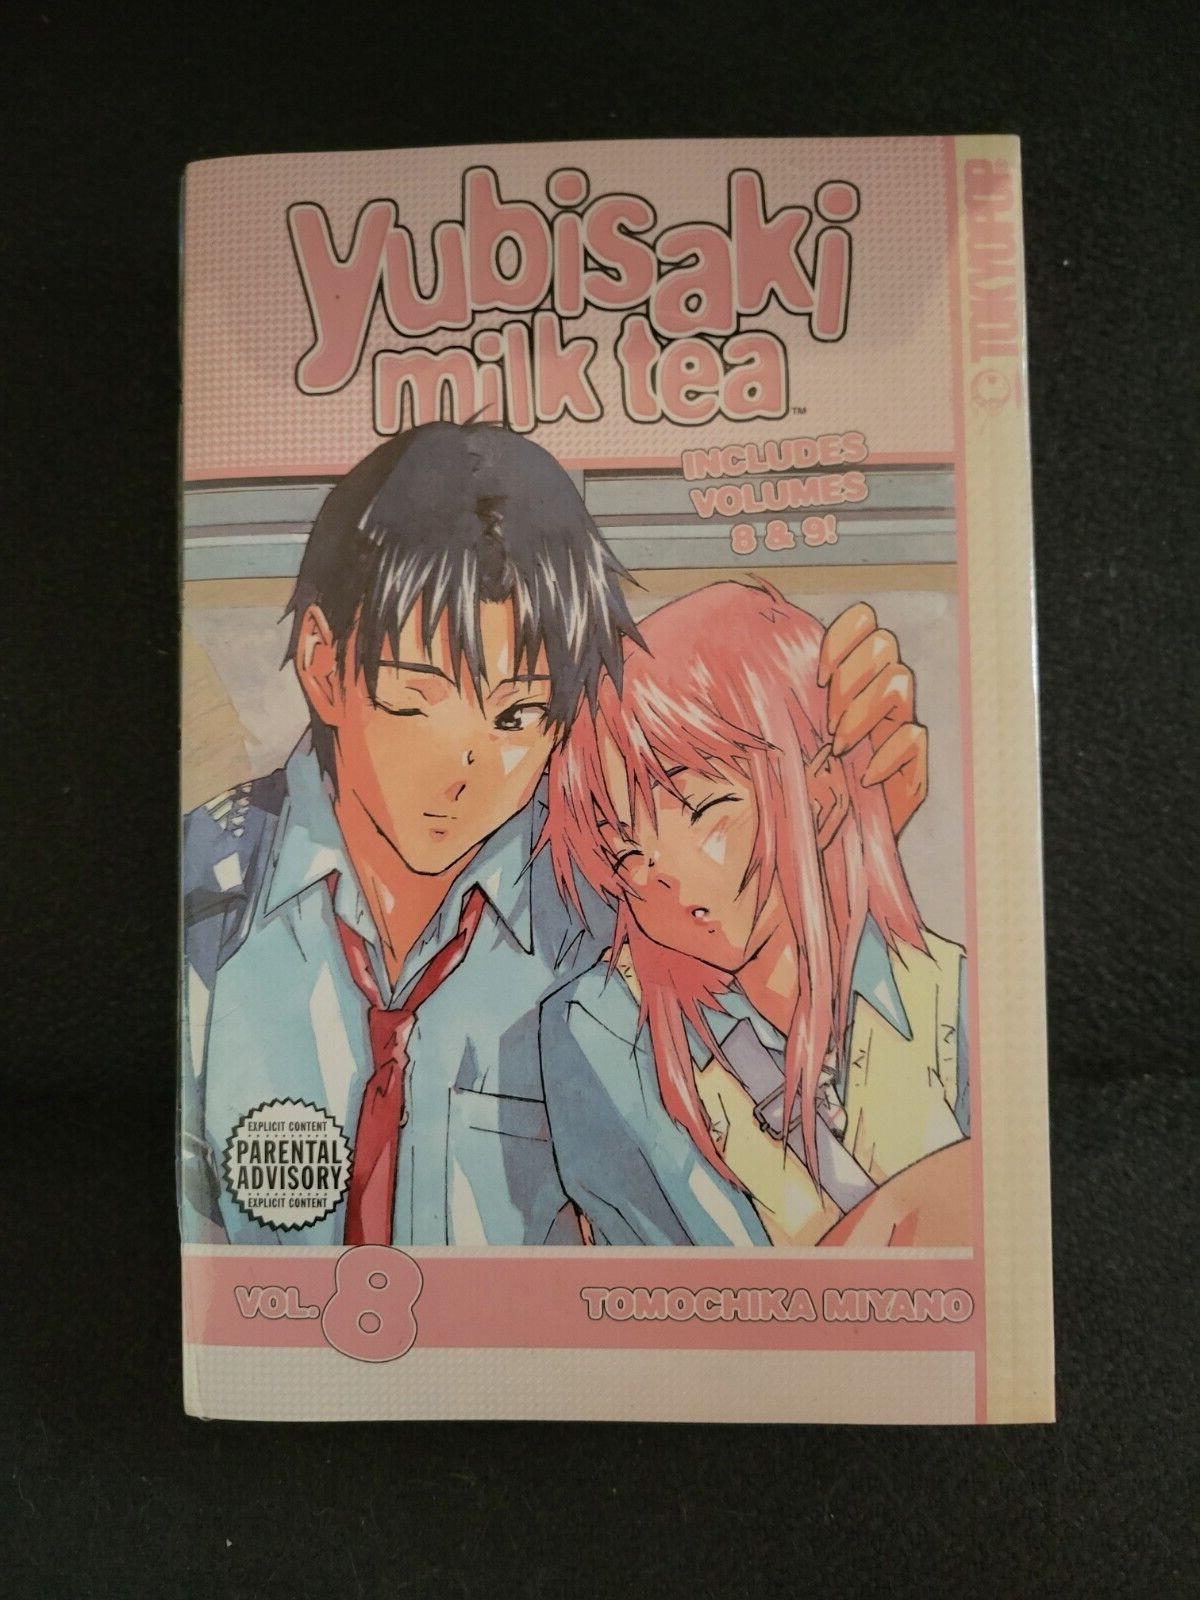 Yubisaki Milk Tea vol. 8-9 Manga Graphic Novel